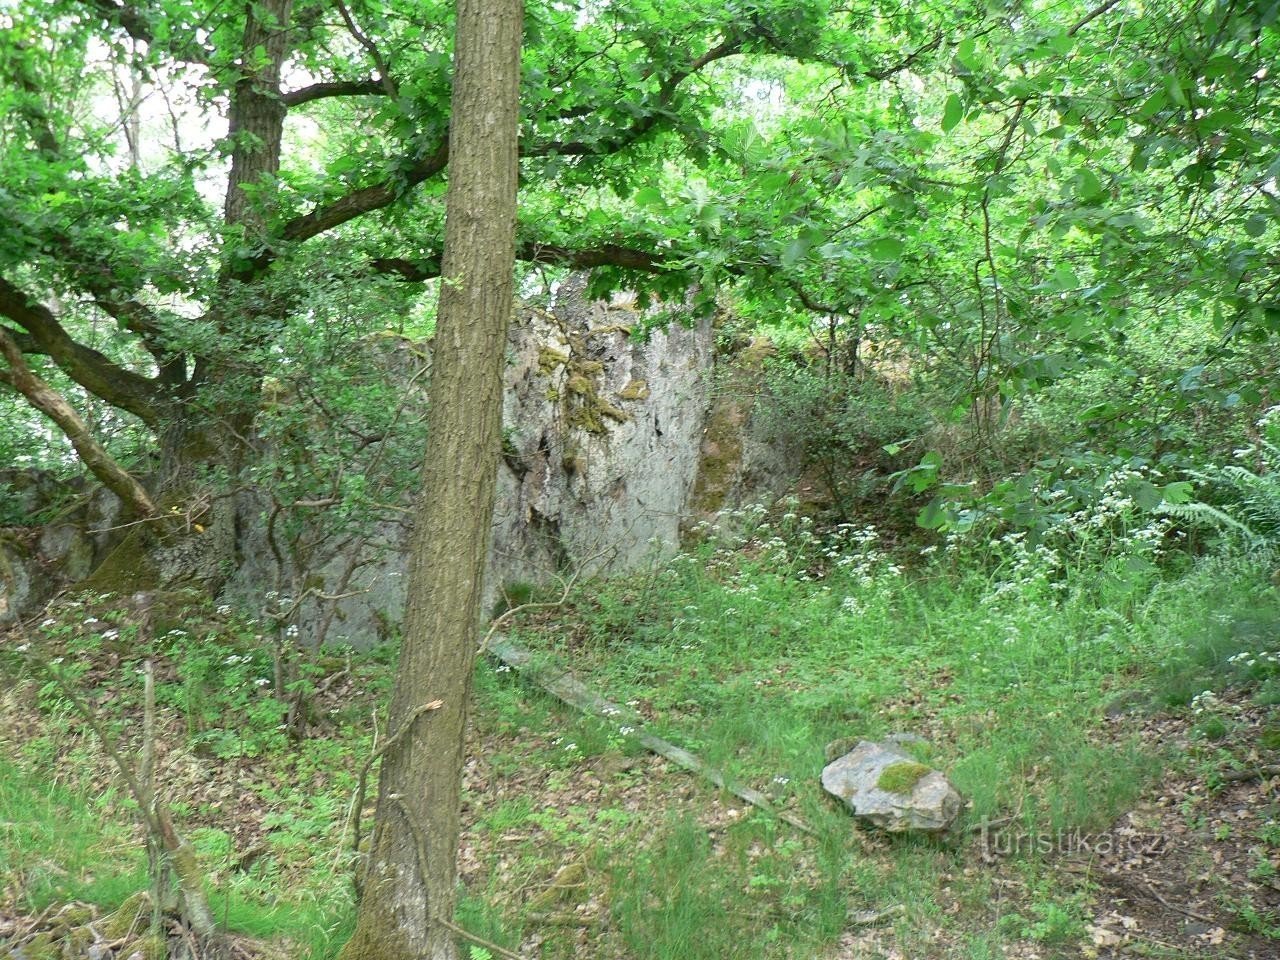 Grubi kamen, bivši kamenolom